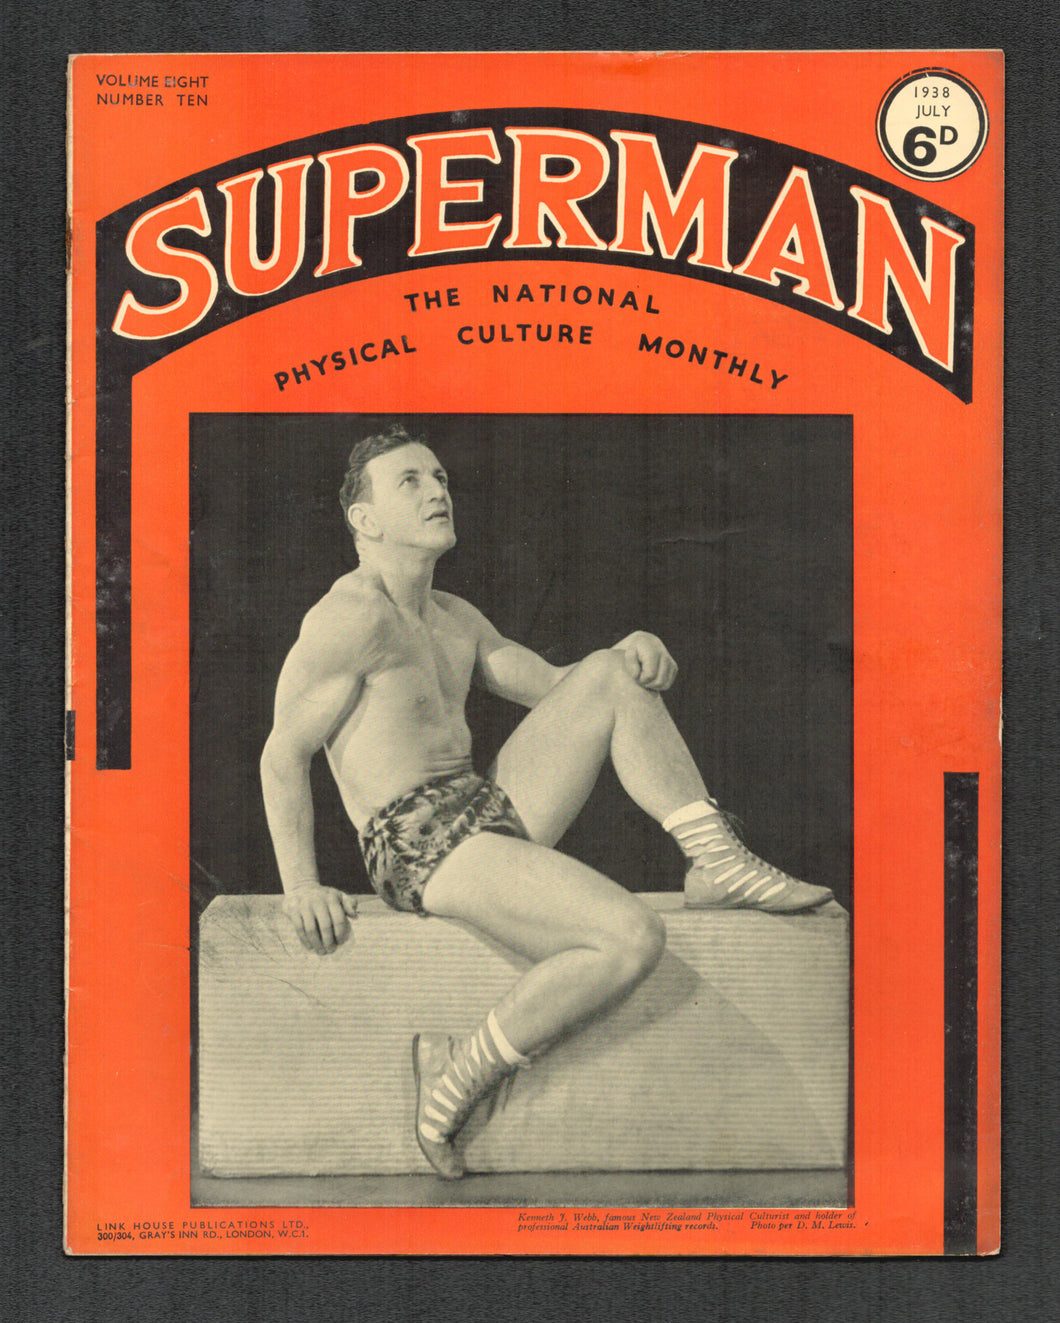 Copy of Superman Vol 8 No 9 June 1938